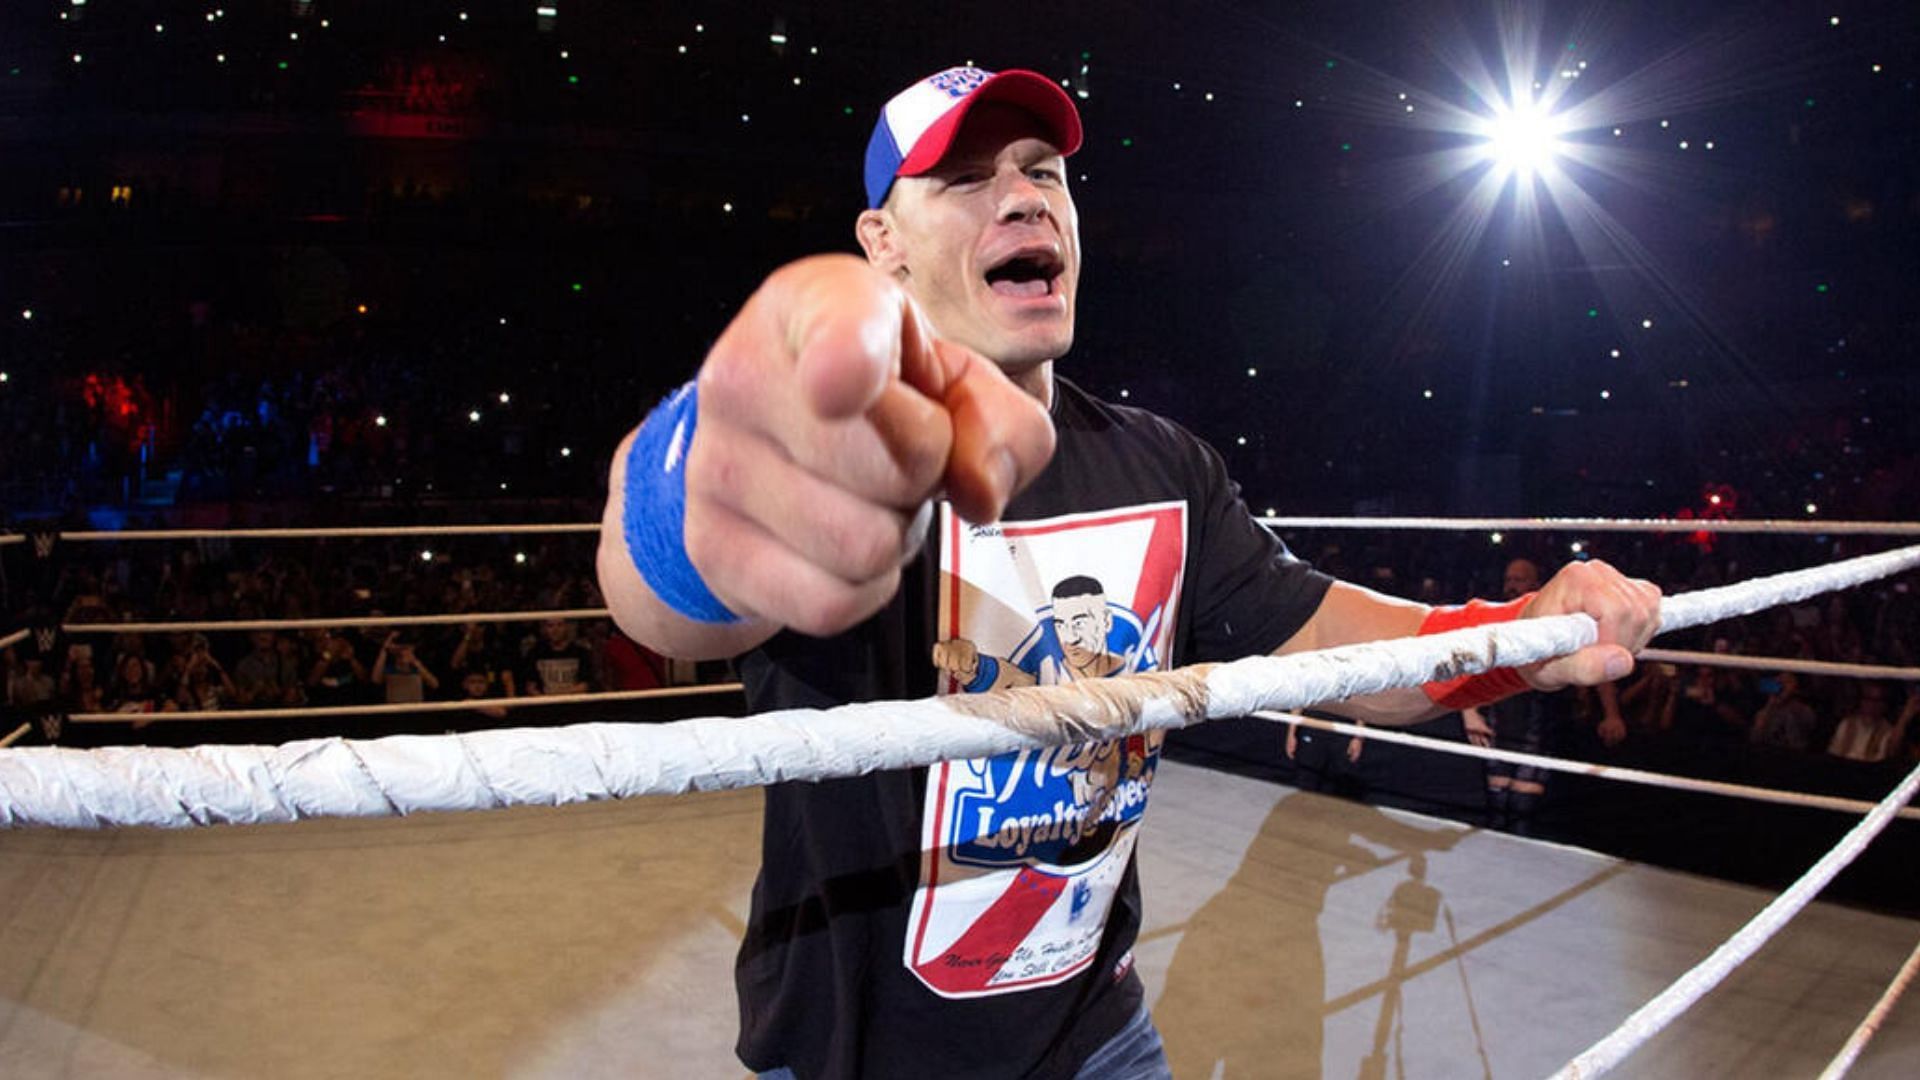 Cena returned last night at WrestleMania.